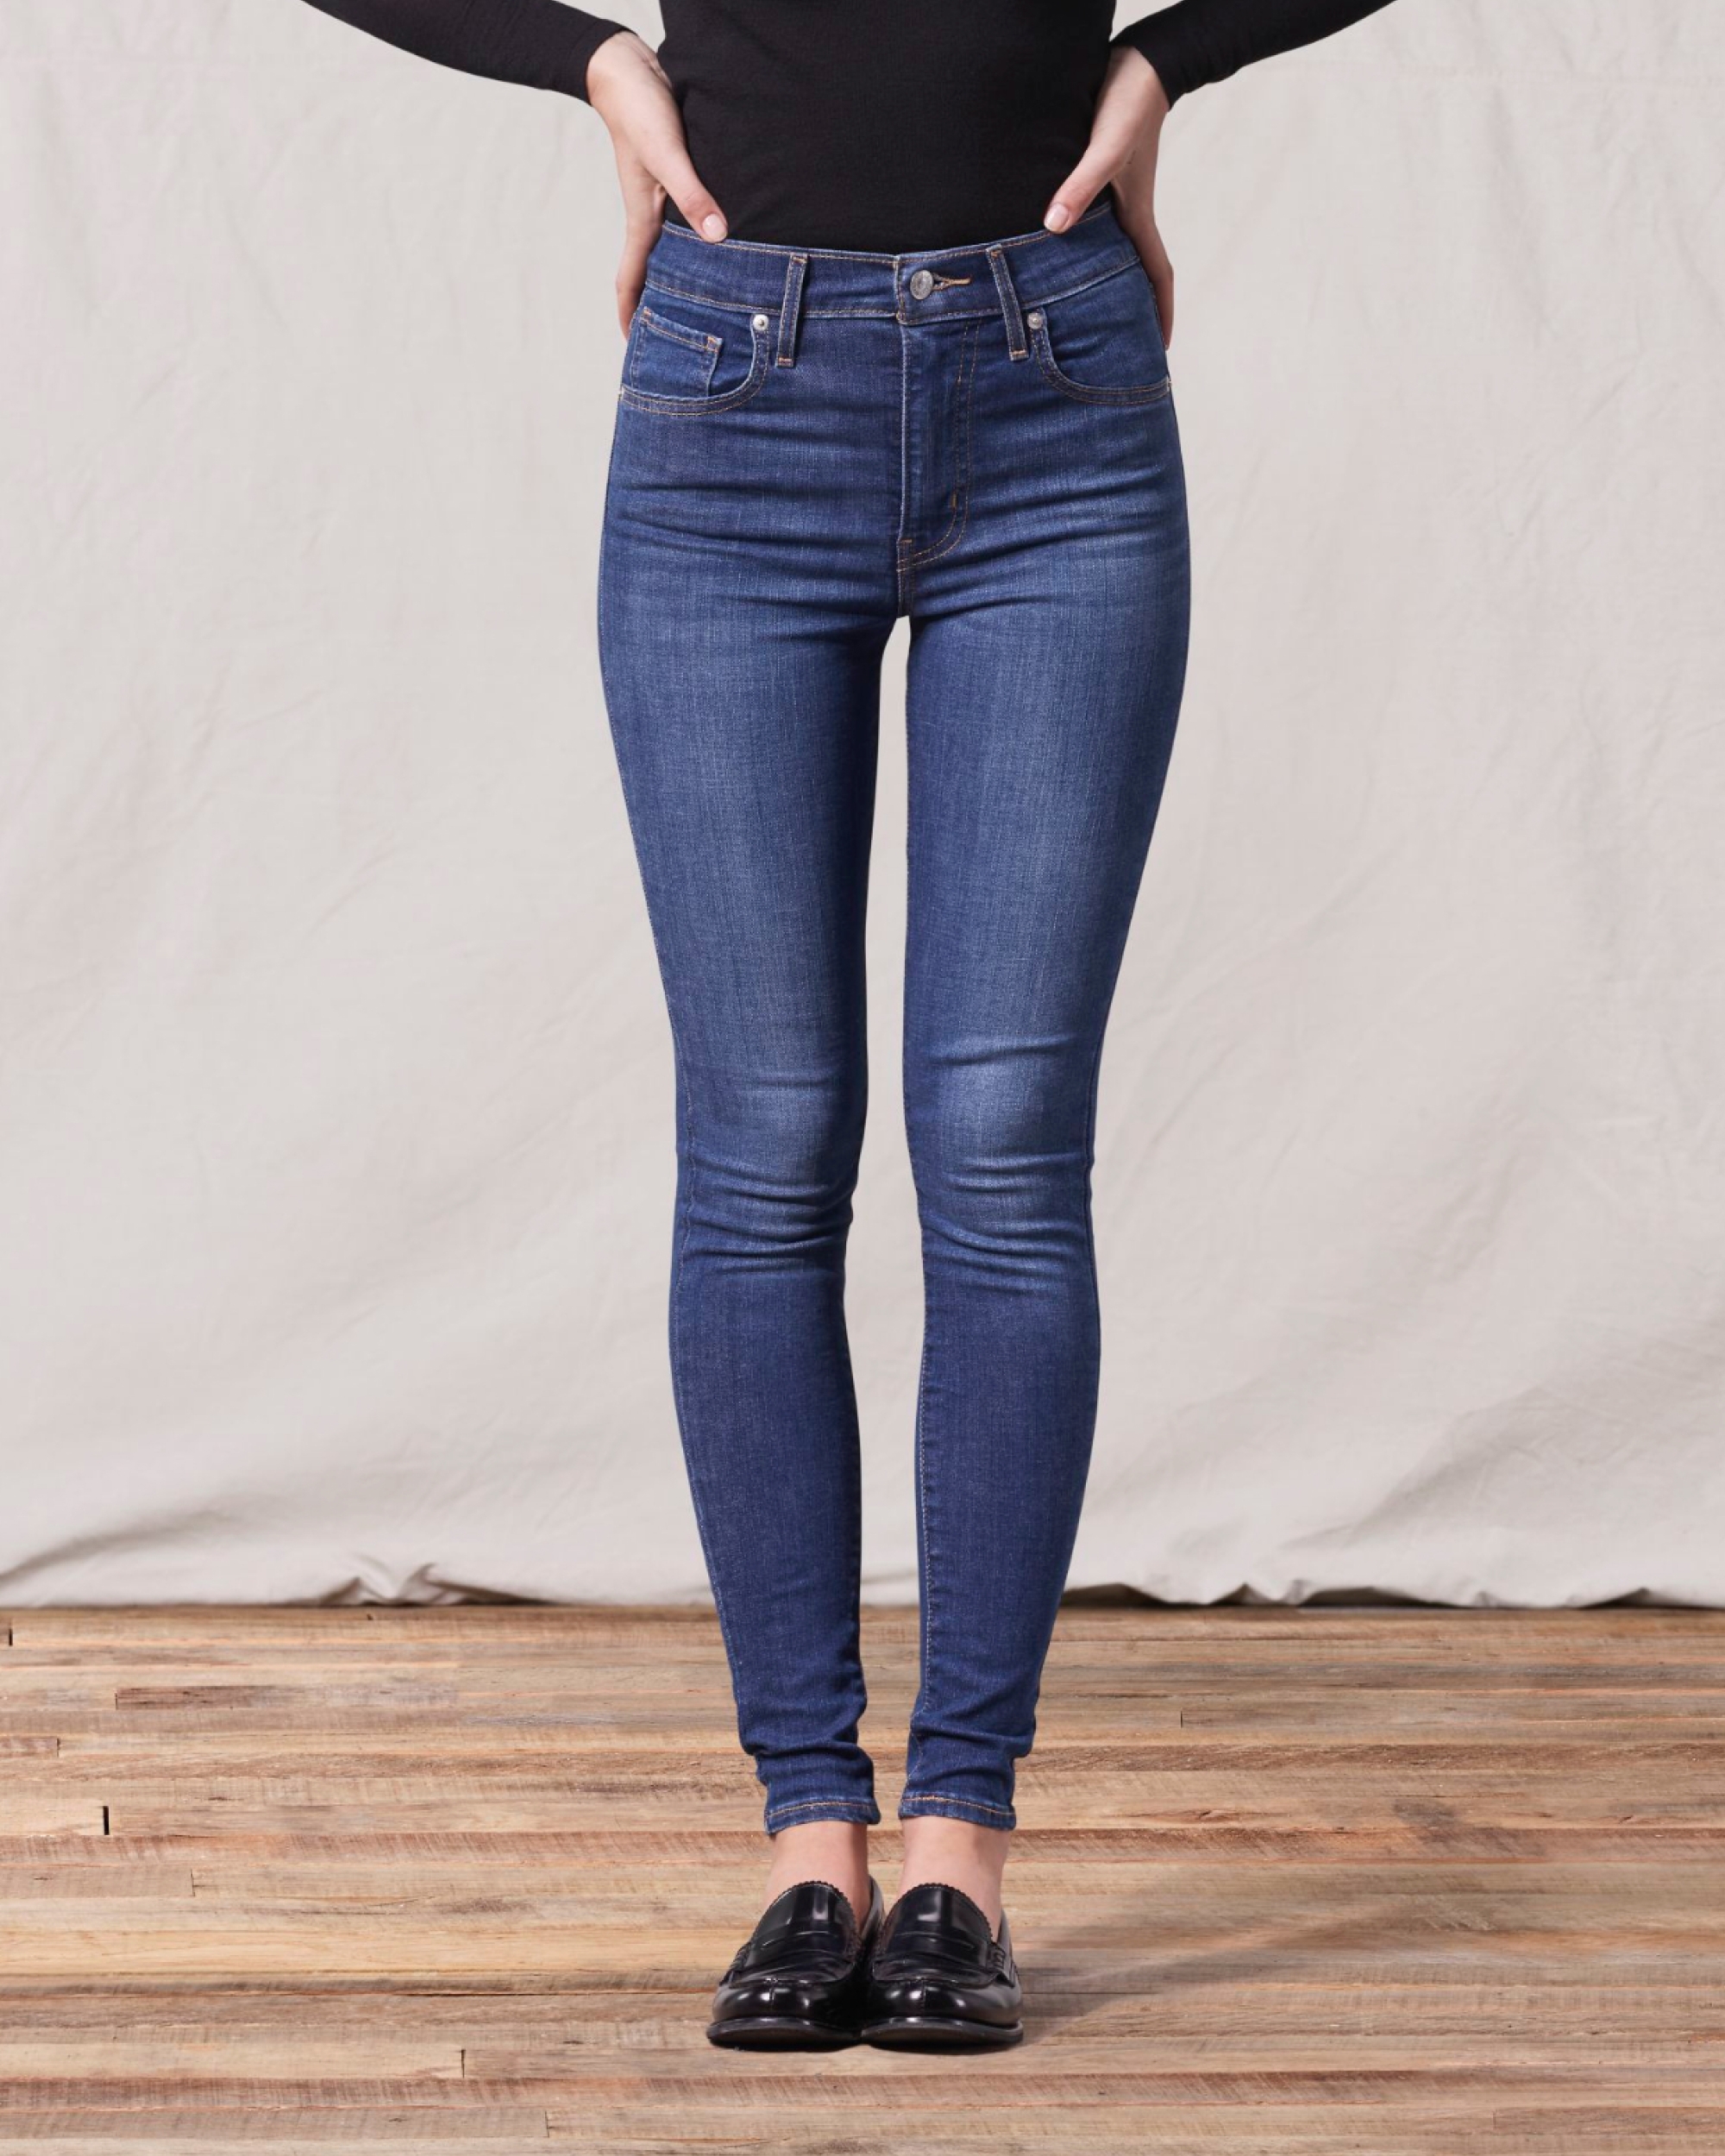 levis jeans woman